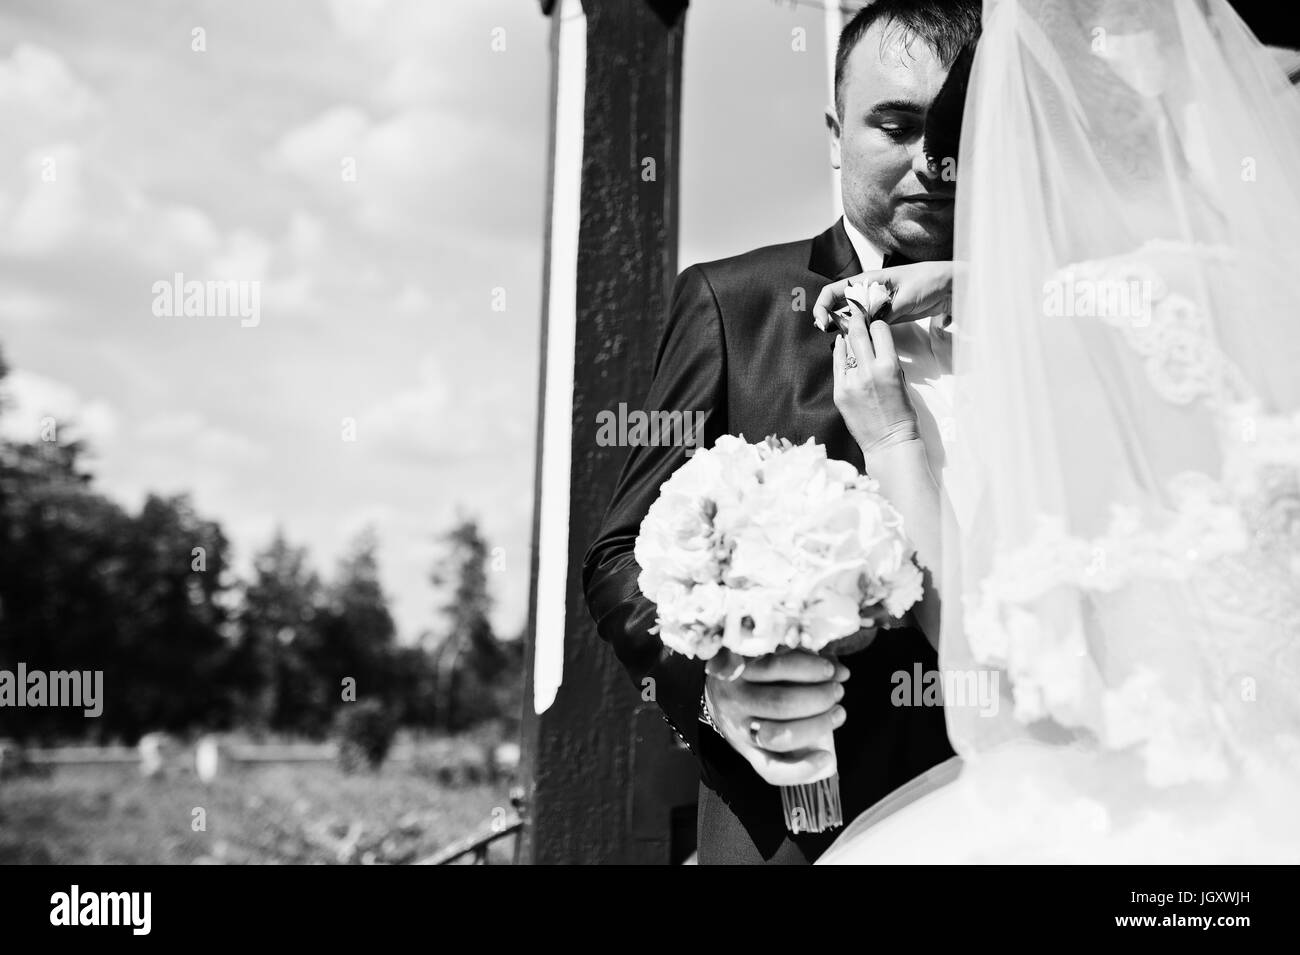 Wunderschöne junge Braut pinning Knopfloch-Blume des Bräutigams Jacke outdoor am Tag ihrer Hochzeit. Schwarz / weiß Foto. Stockfoto